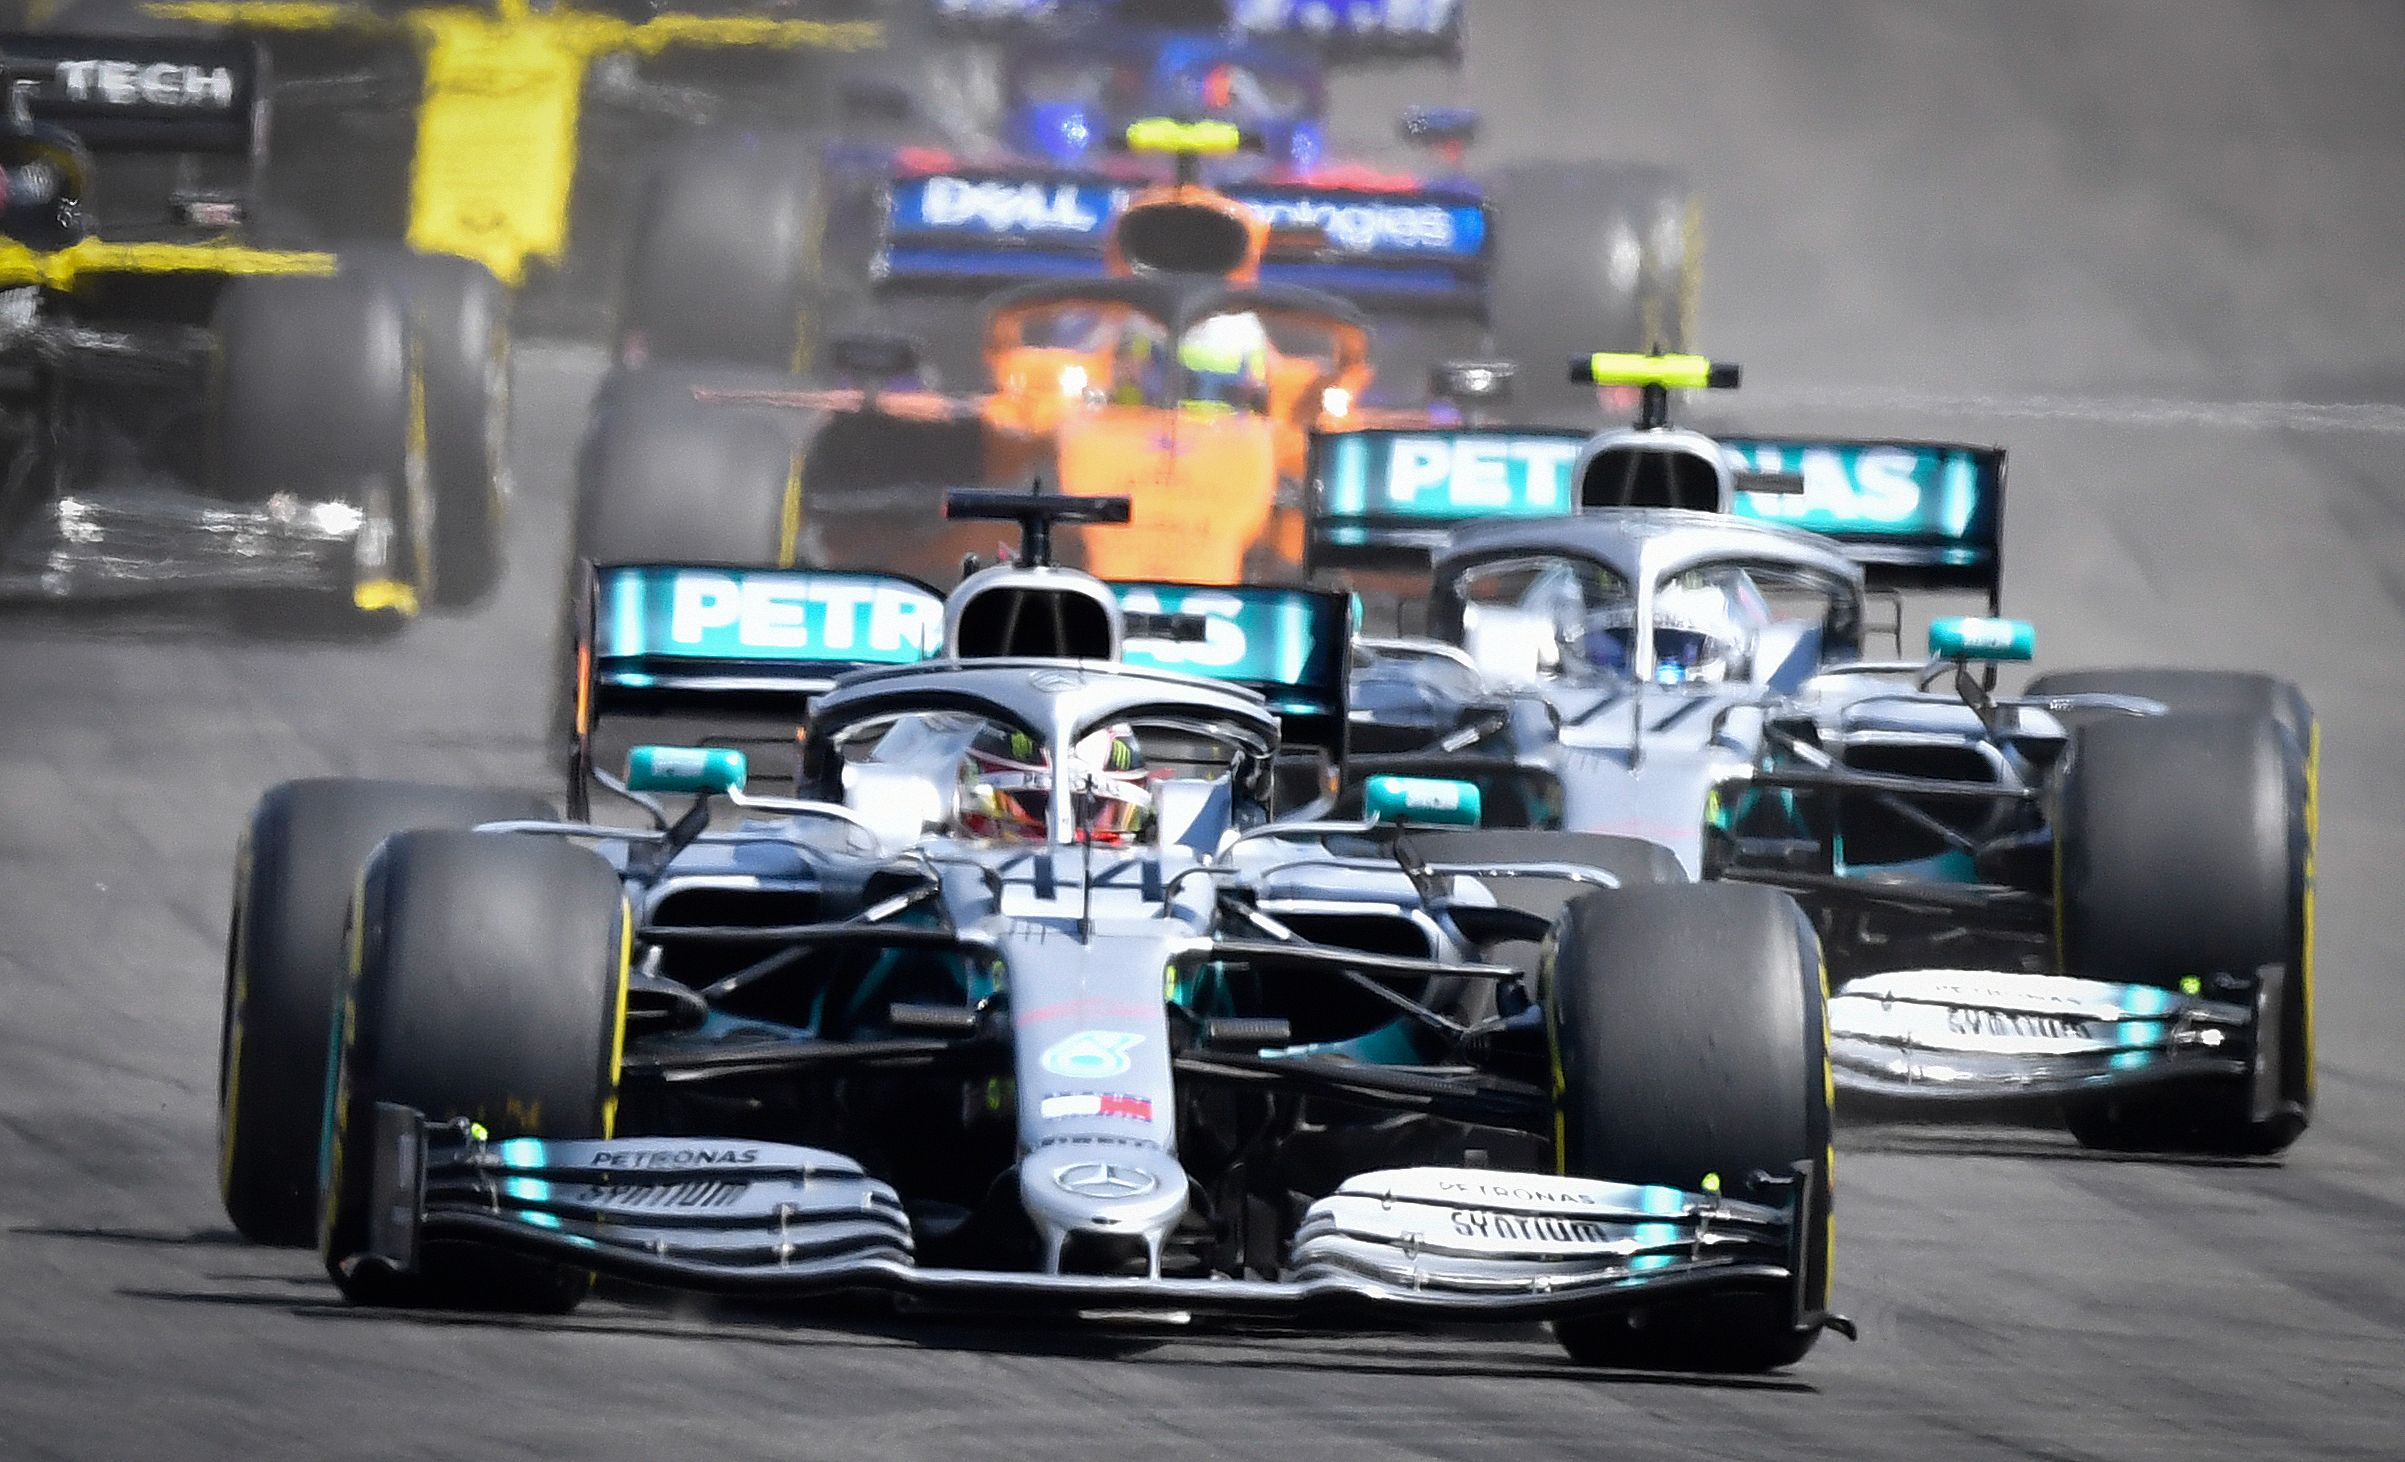 El británico Lewis Hamilton (al frente) de la escudería Mercedes se impuso en el Gran Premio de Francia, en el  Circuito Paul Ricard. (Foto Prensa Libre: AFP)